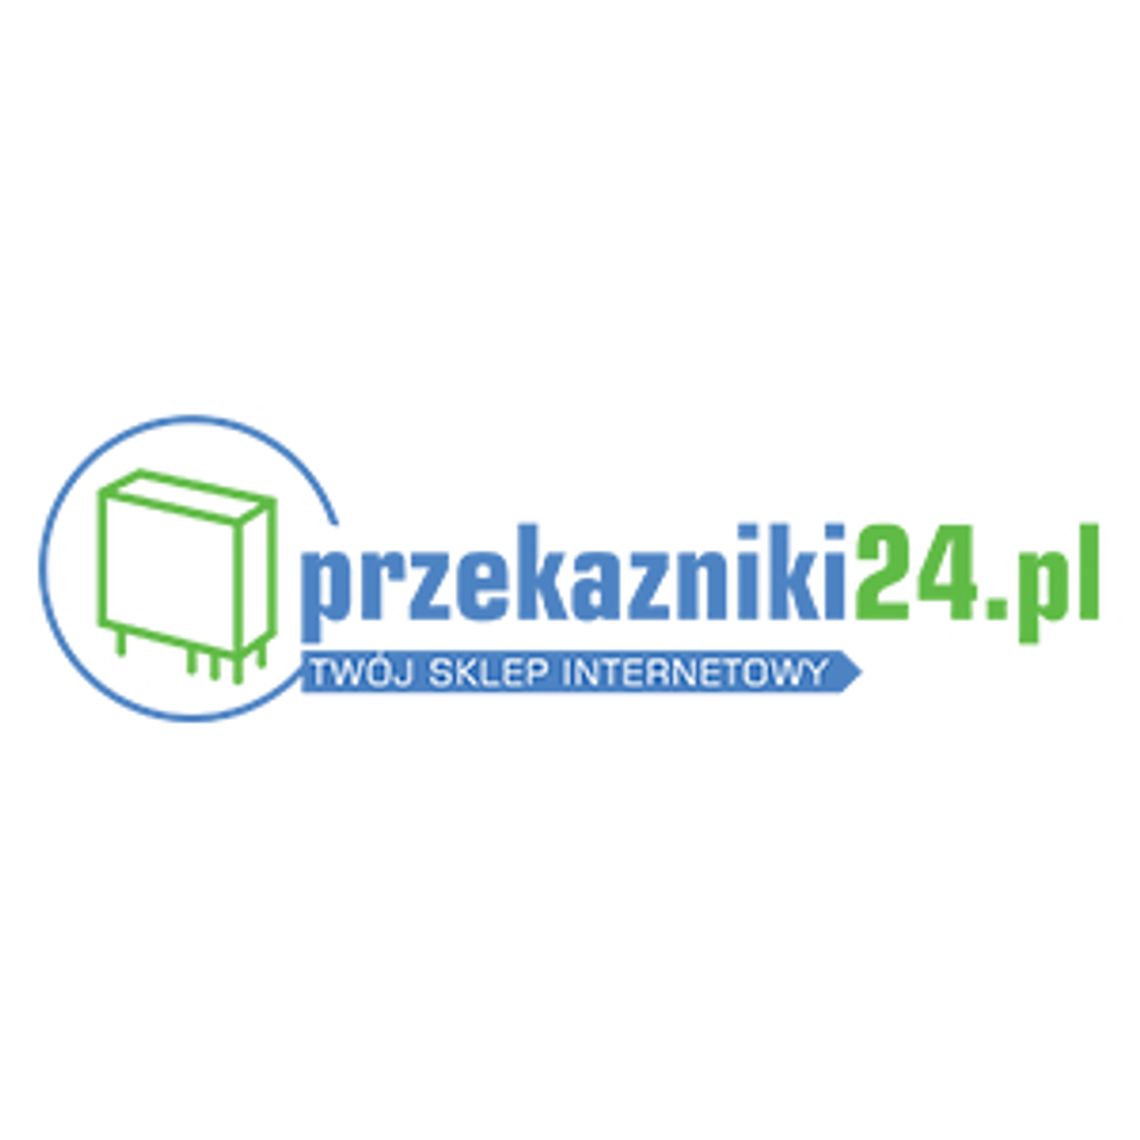 Przekaźniki czasowe - Przekazniki24